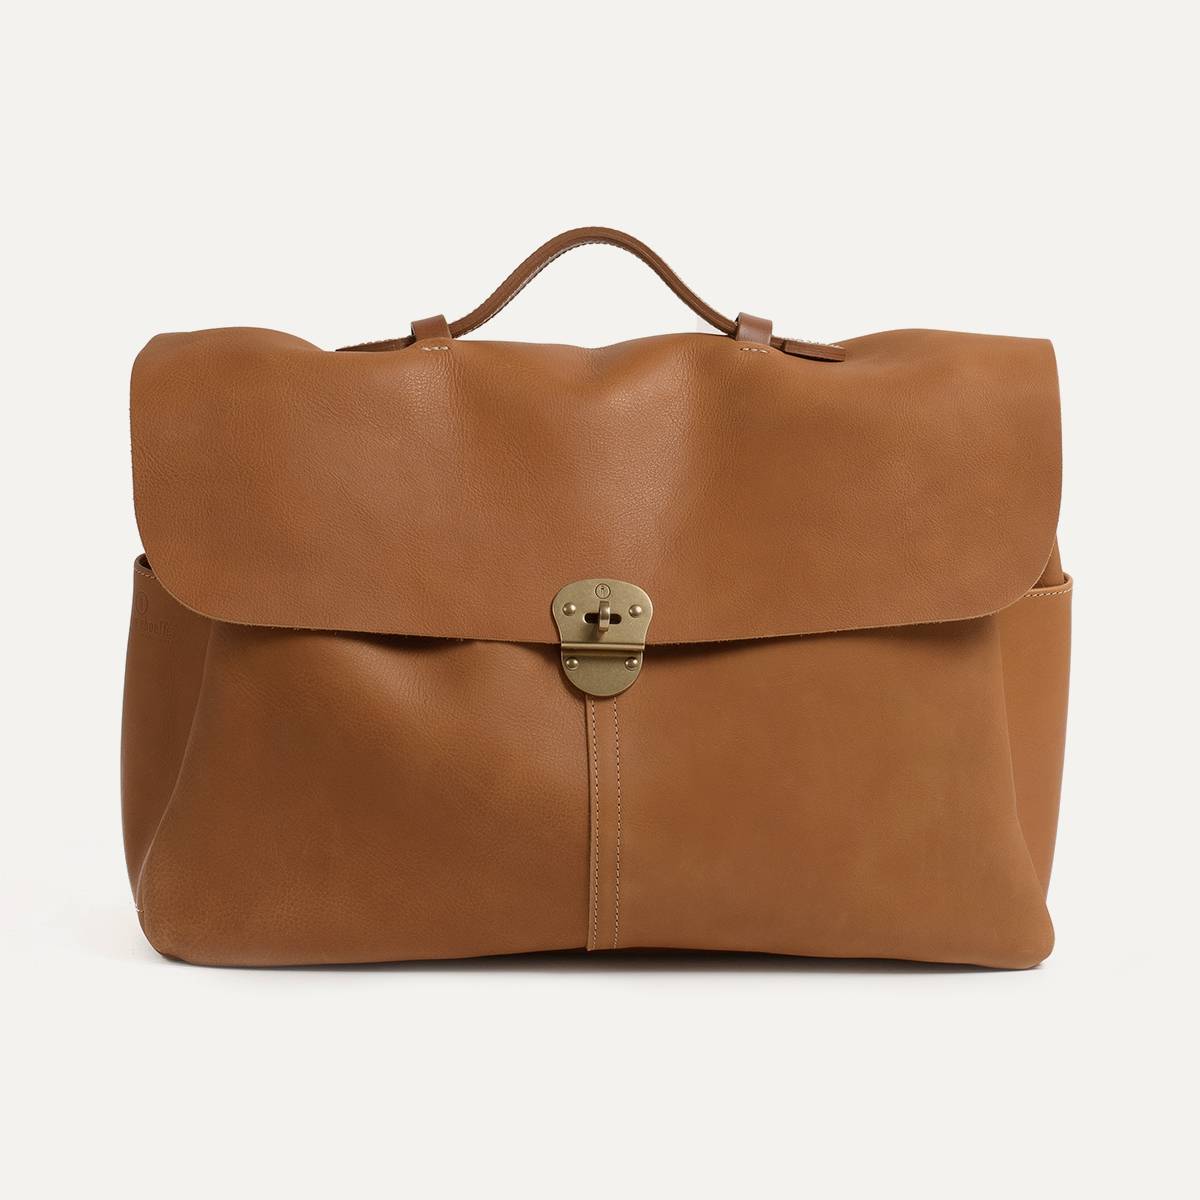 Business bag Charles for men - satchel bag Caramel